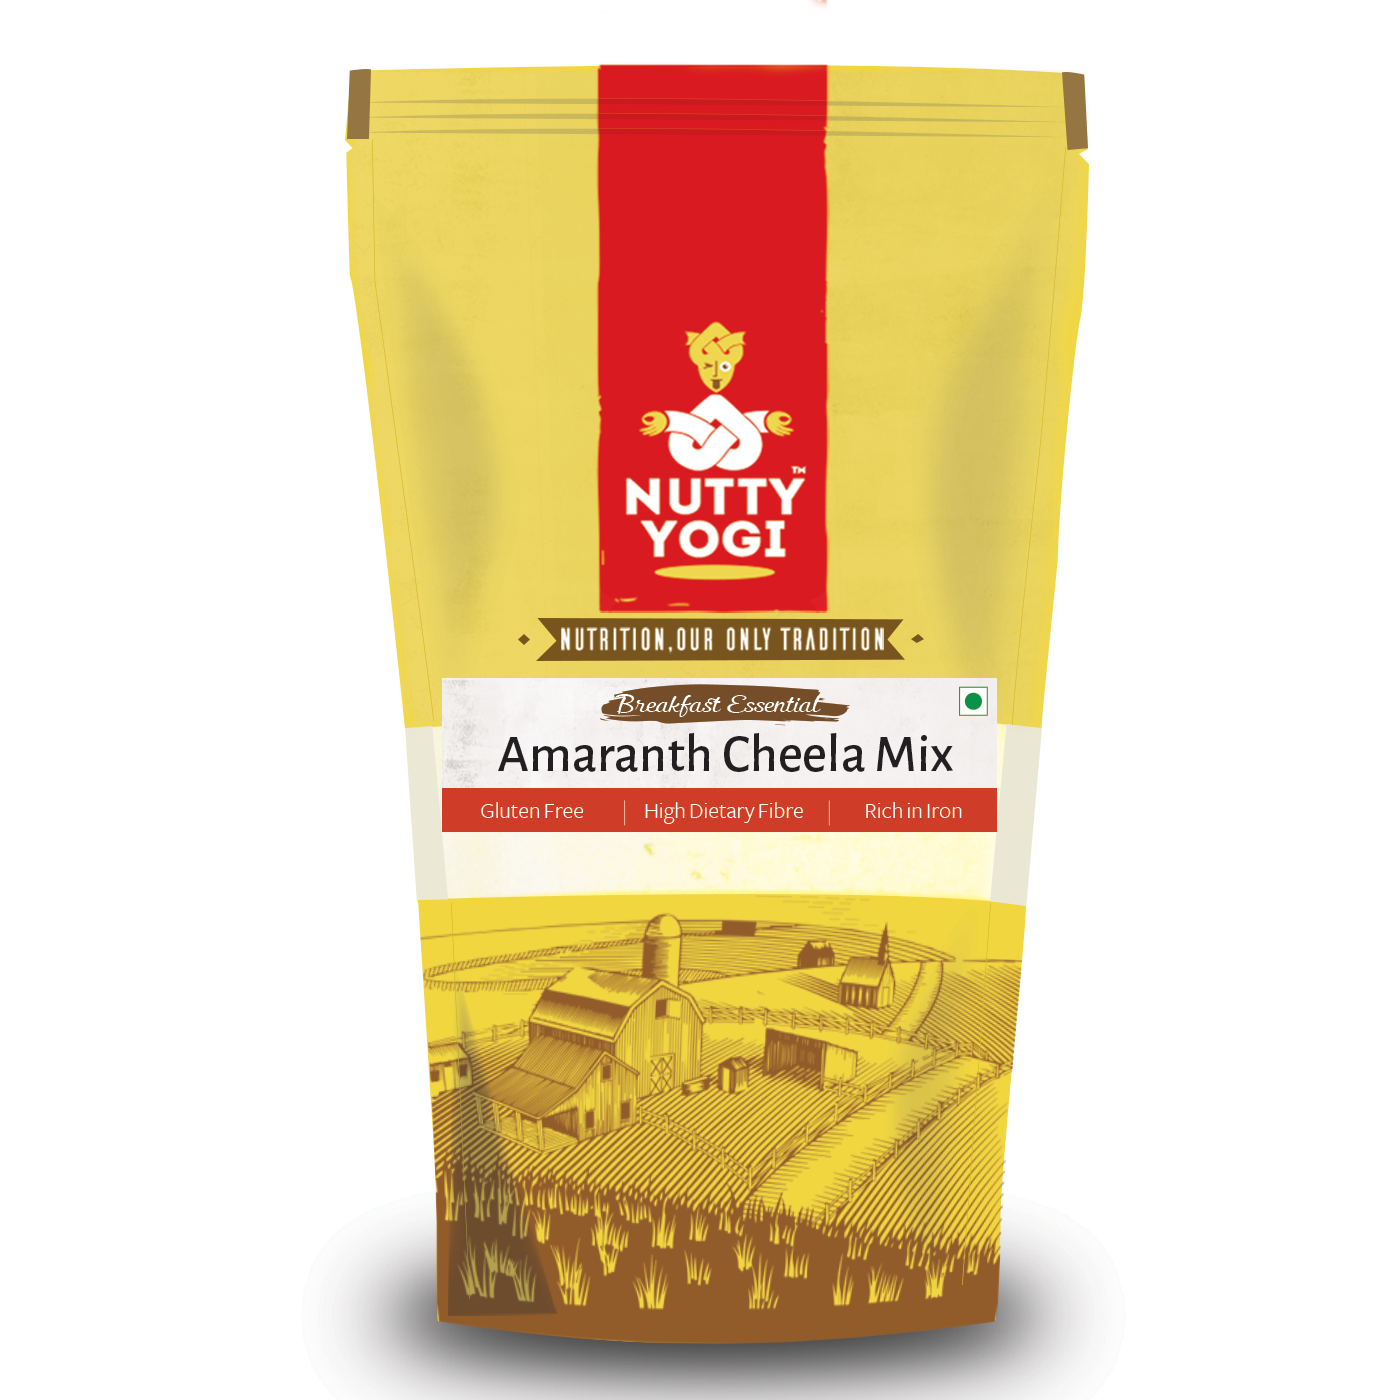 Nutty Yogi Amaranth Cheela Mix - 400g